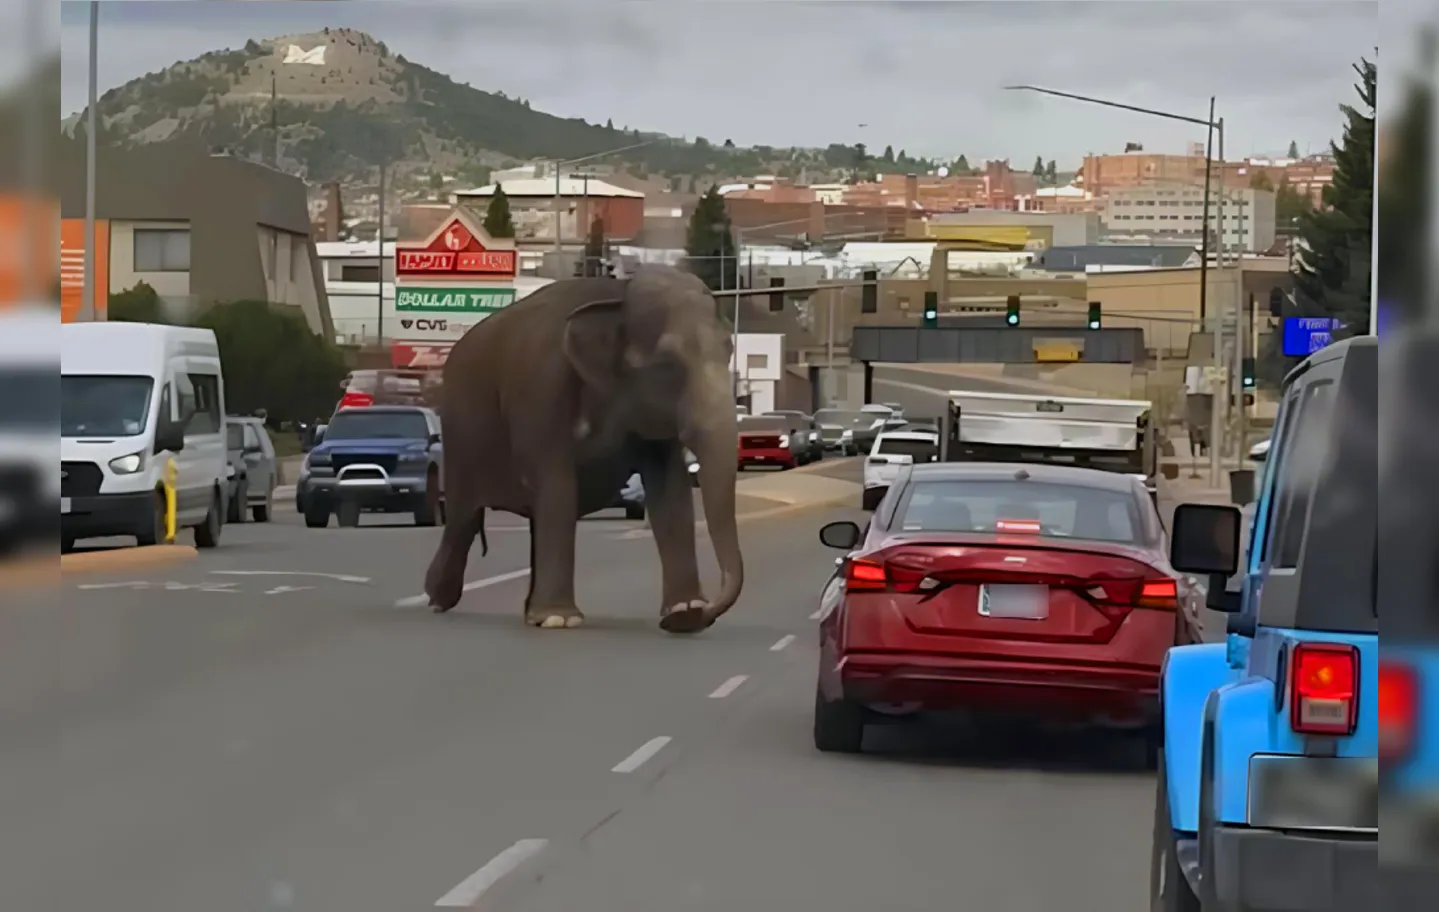 Animal passou por carros e prédios da cidade de Butte, em Montana.